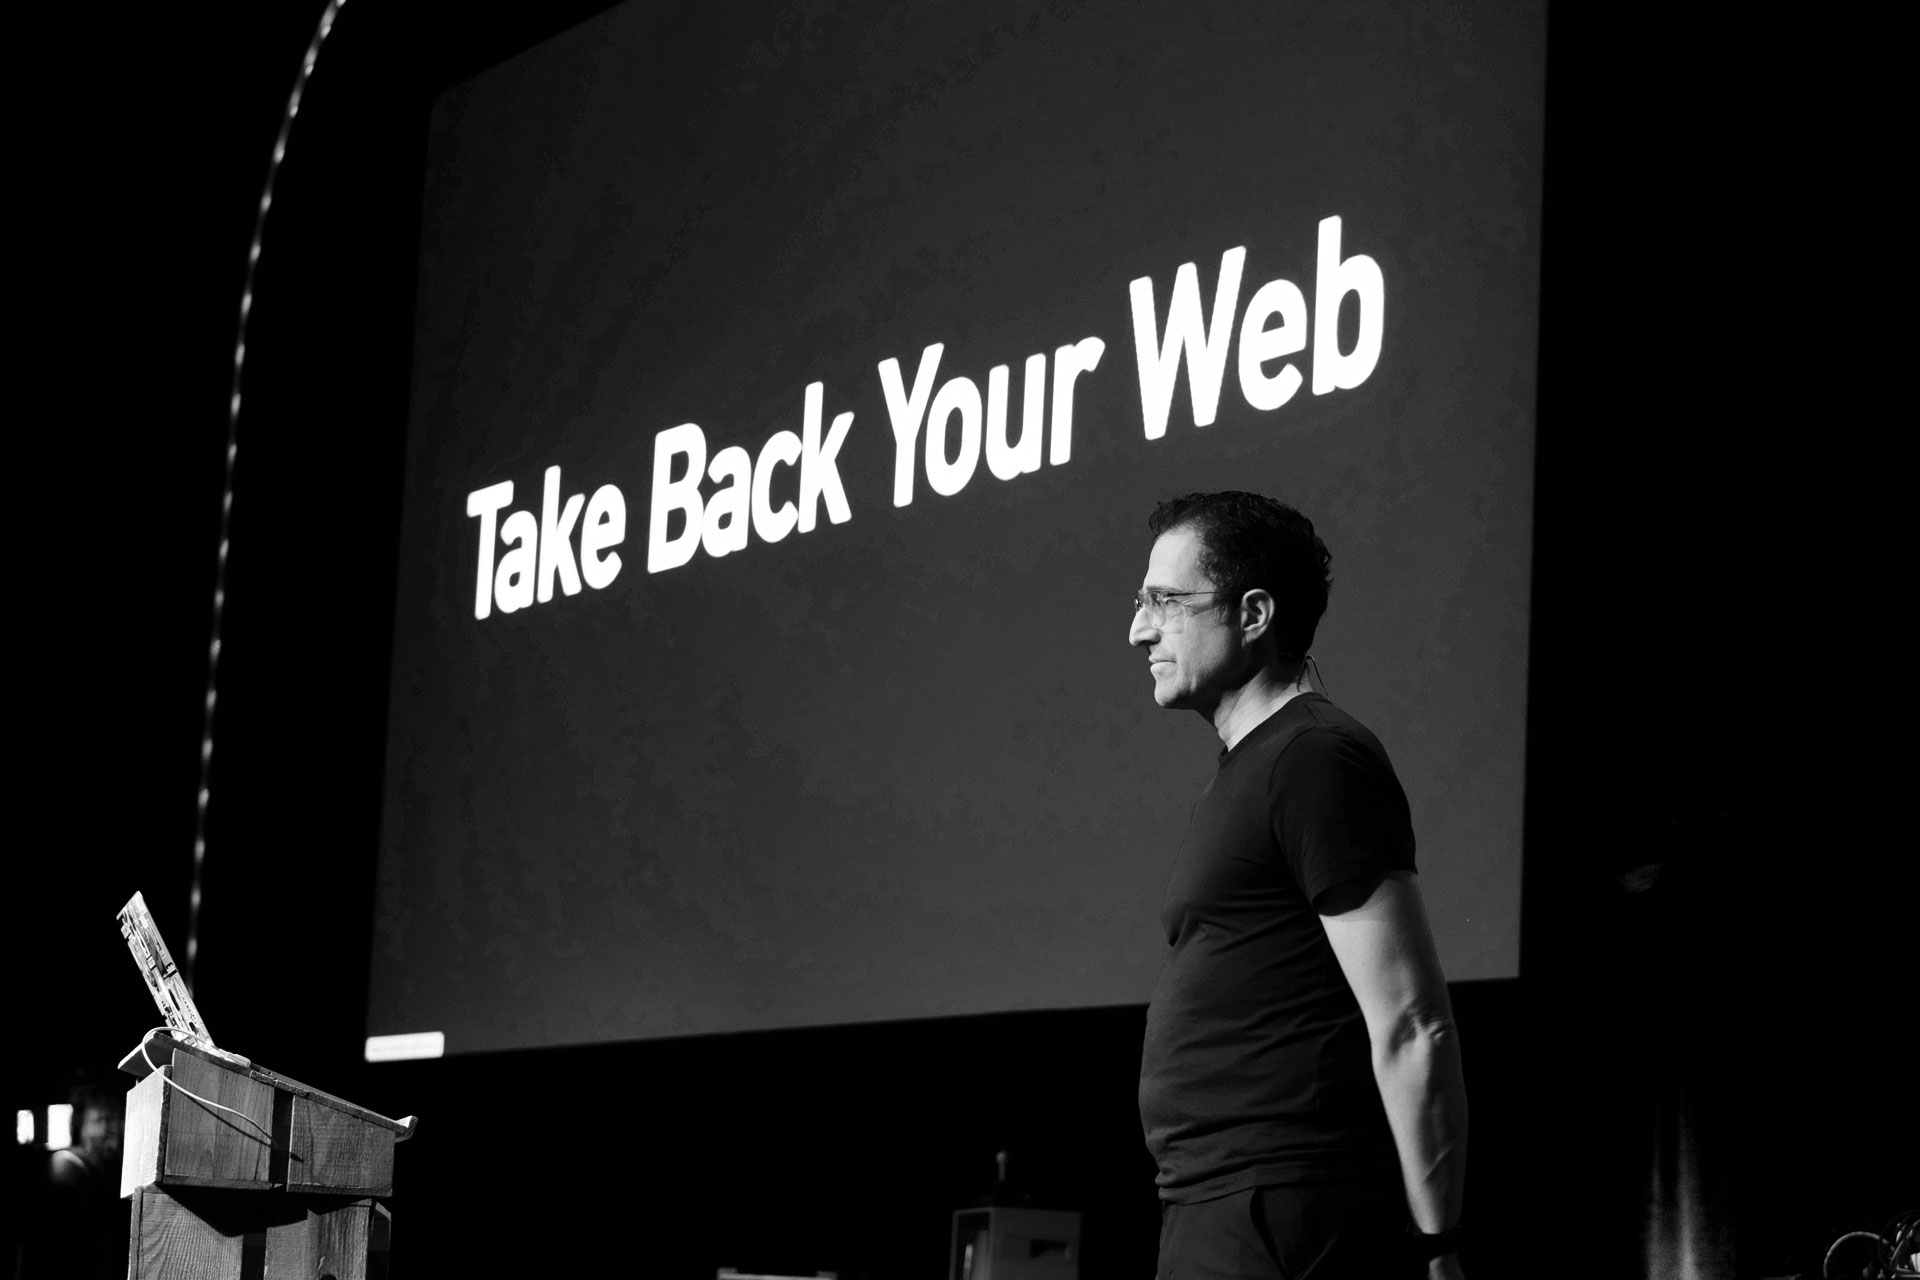 Tantek Çelik lors de la conférence 'Take back your web' à Berlin en 2019